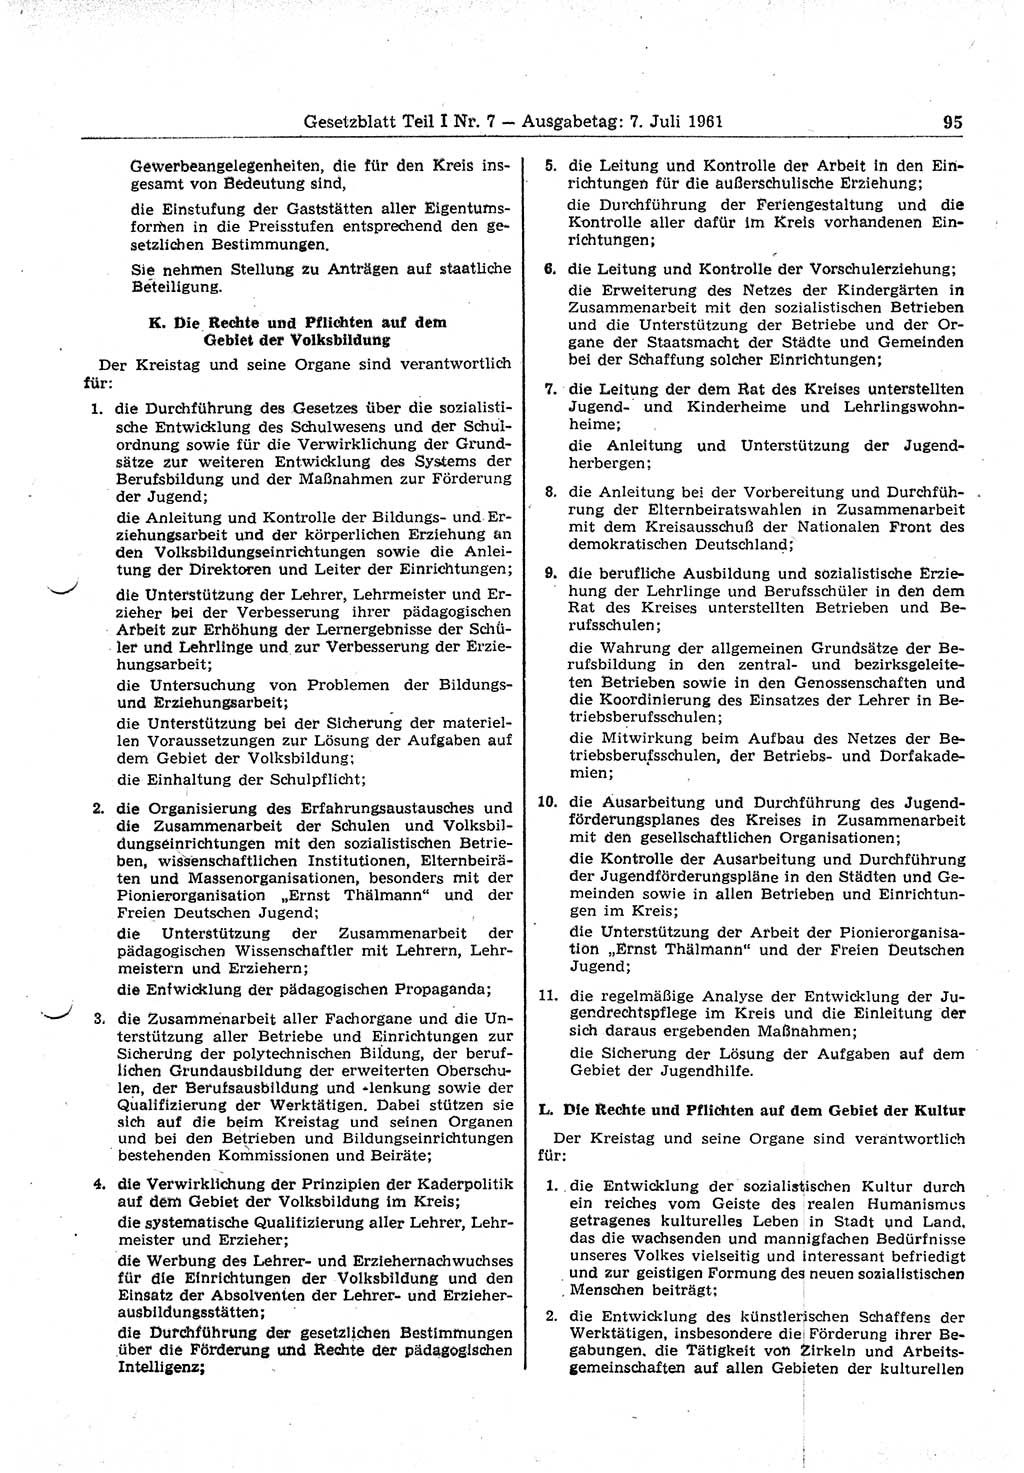 Gesetzblatt (GBl.) der Deutschen Demokratischen Republik (DDR) Teil Ⅰ 1961, Seite 95 (GBl. DDR Ⅰ 1961, S. 95)